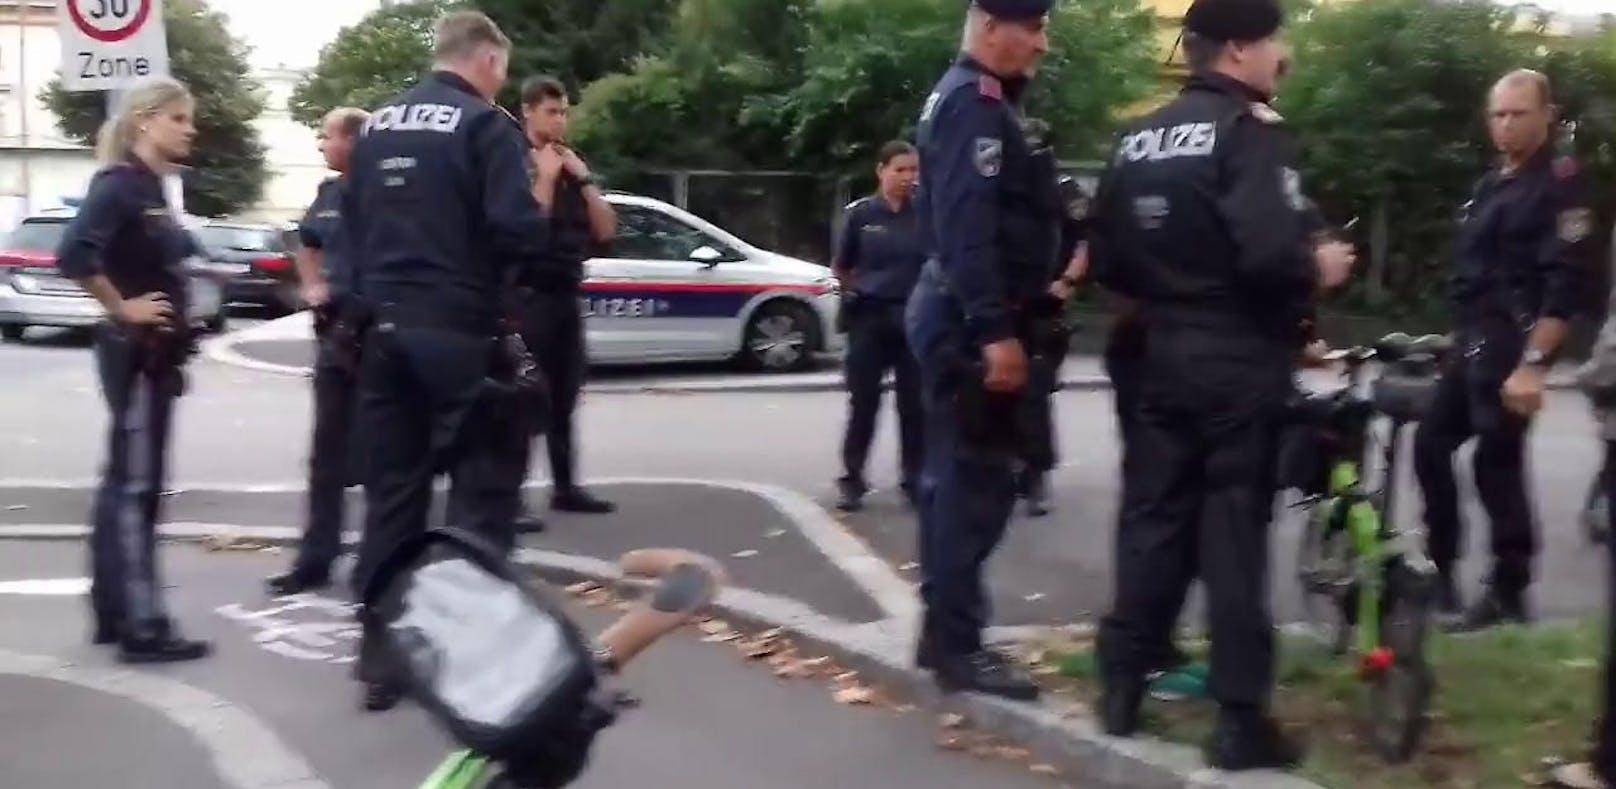 Polizeieinsatz bei der Critical Mass in Linz. Ein Teilnehmer wurde verhaftet und mitgenommen. (Foto: Critical Mass)